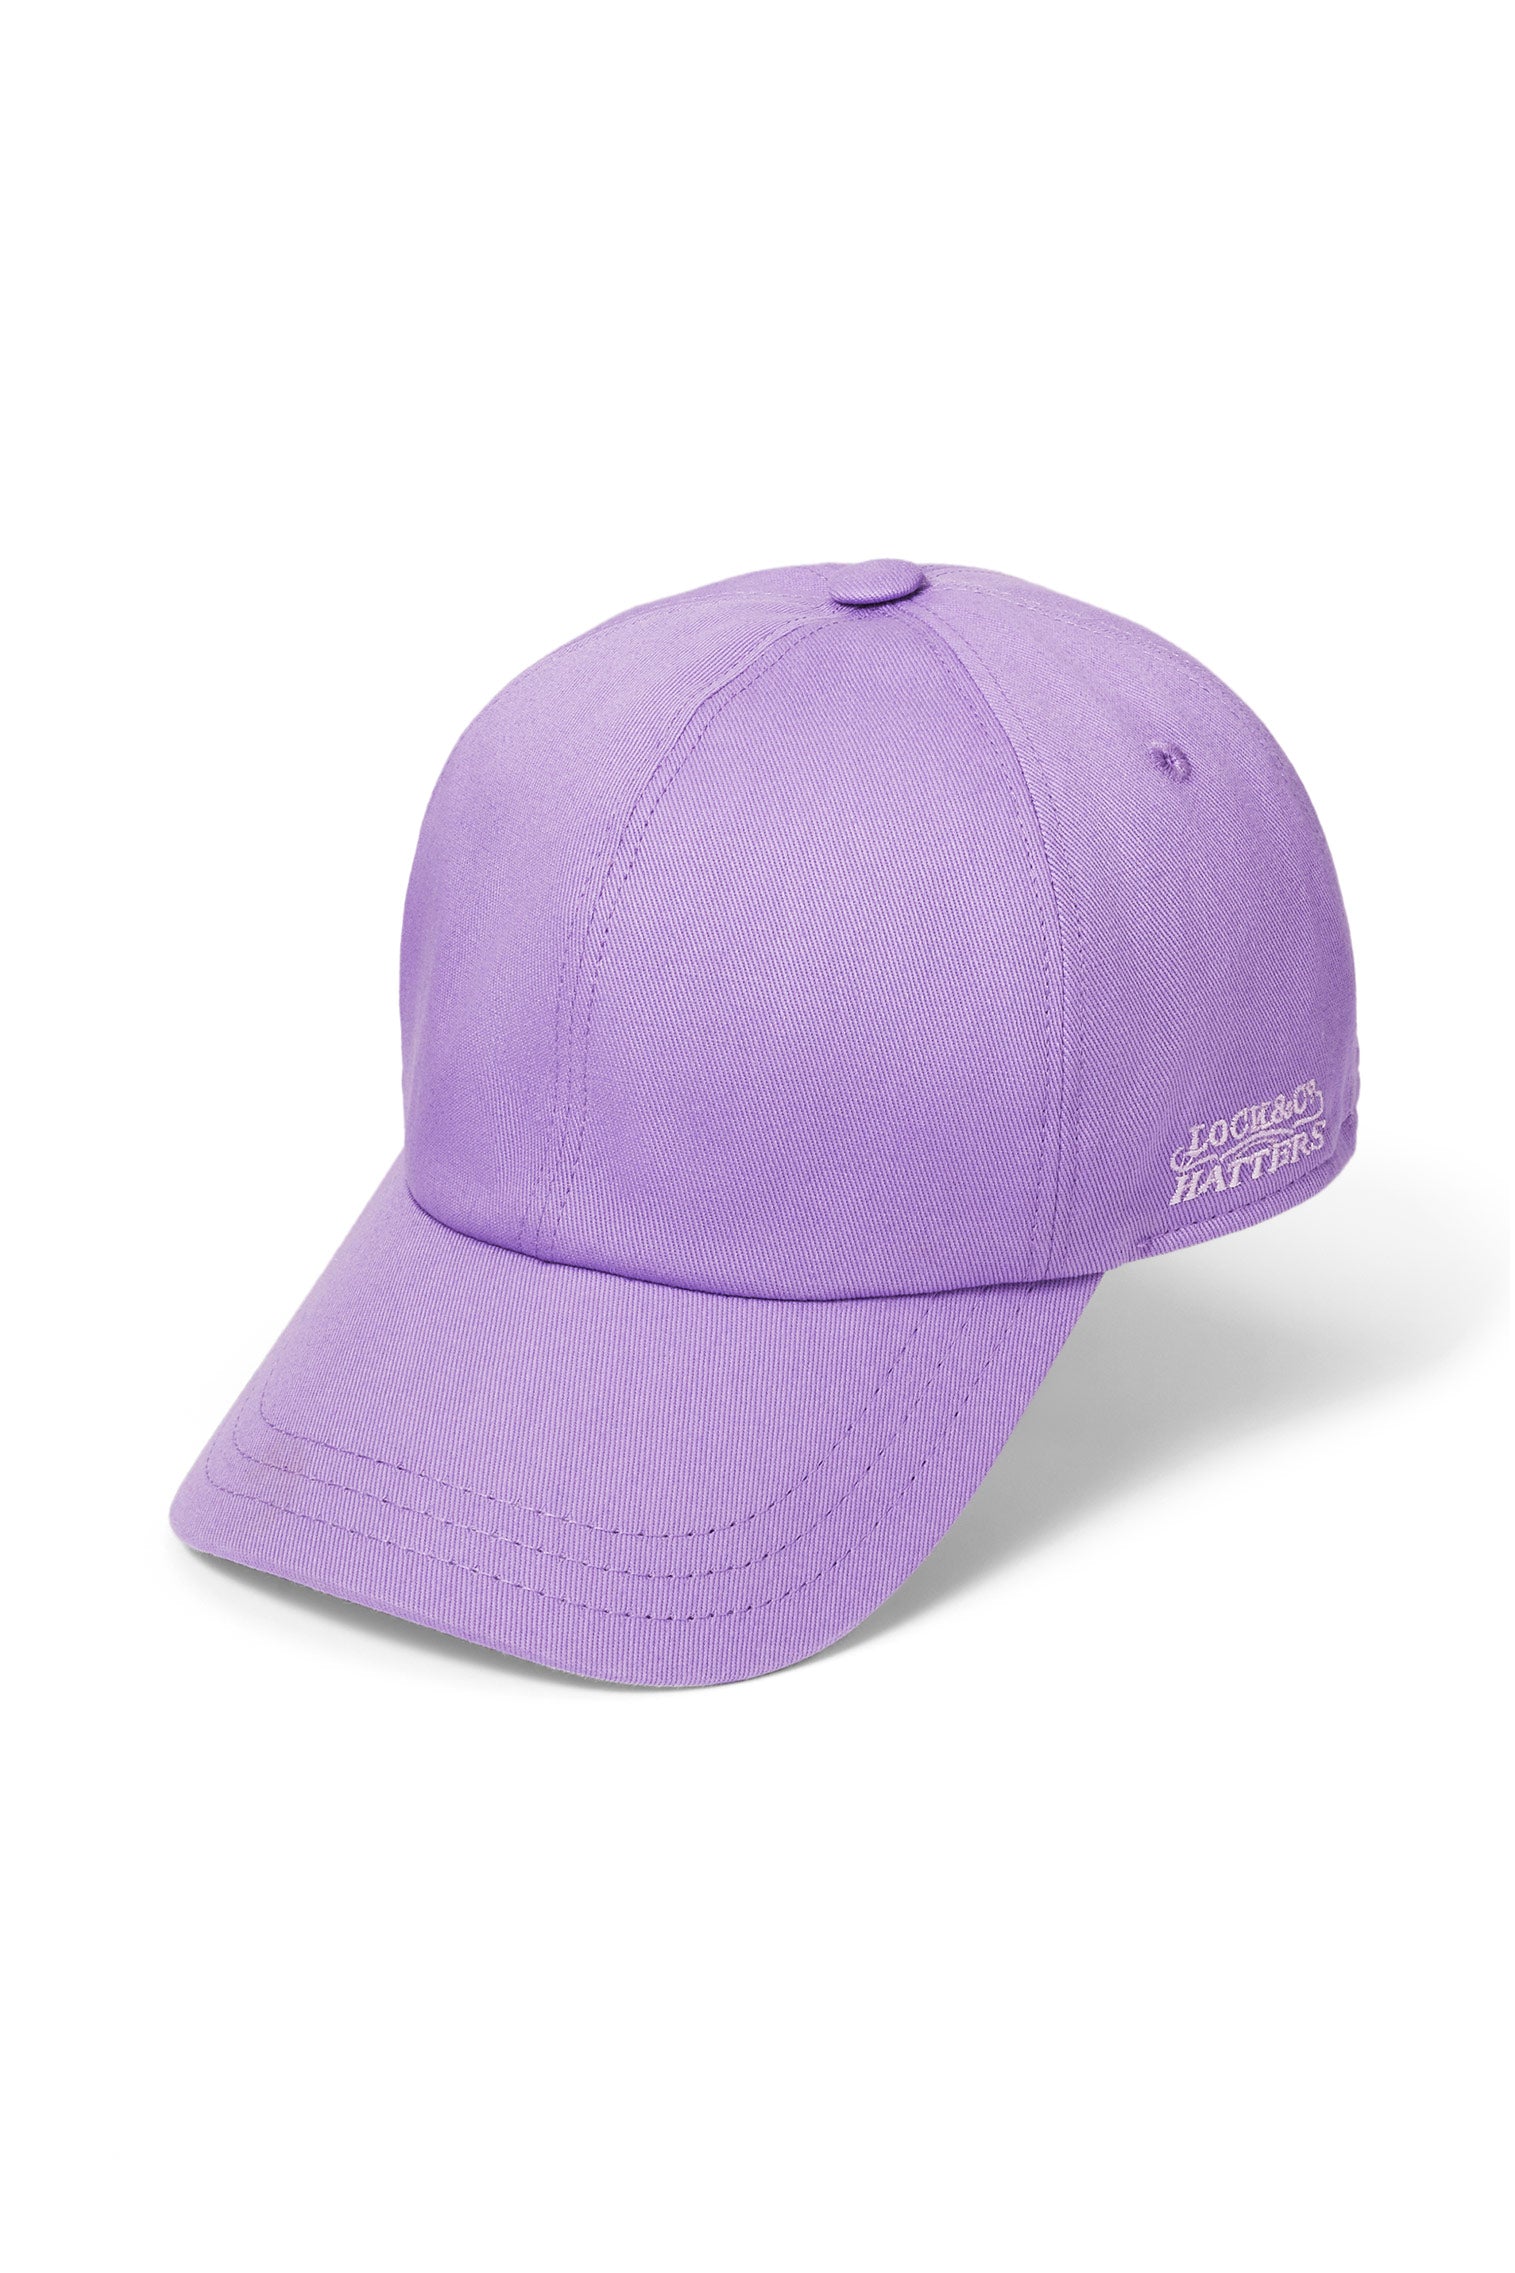 Adjustable Purple Baseball Cap - Women’s Hats - Lock & Co. Hatters London UK